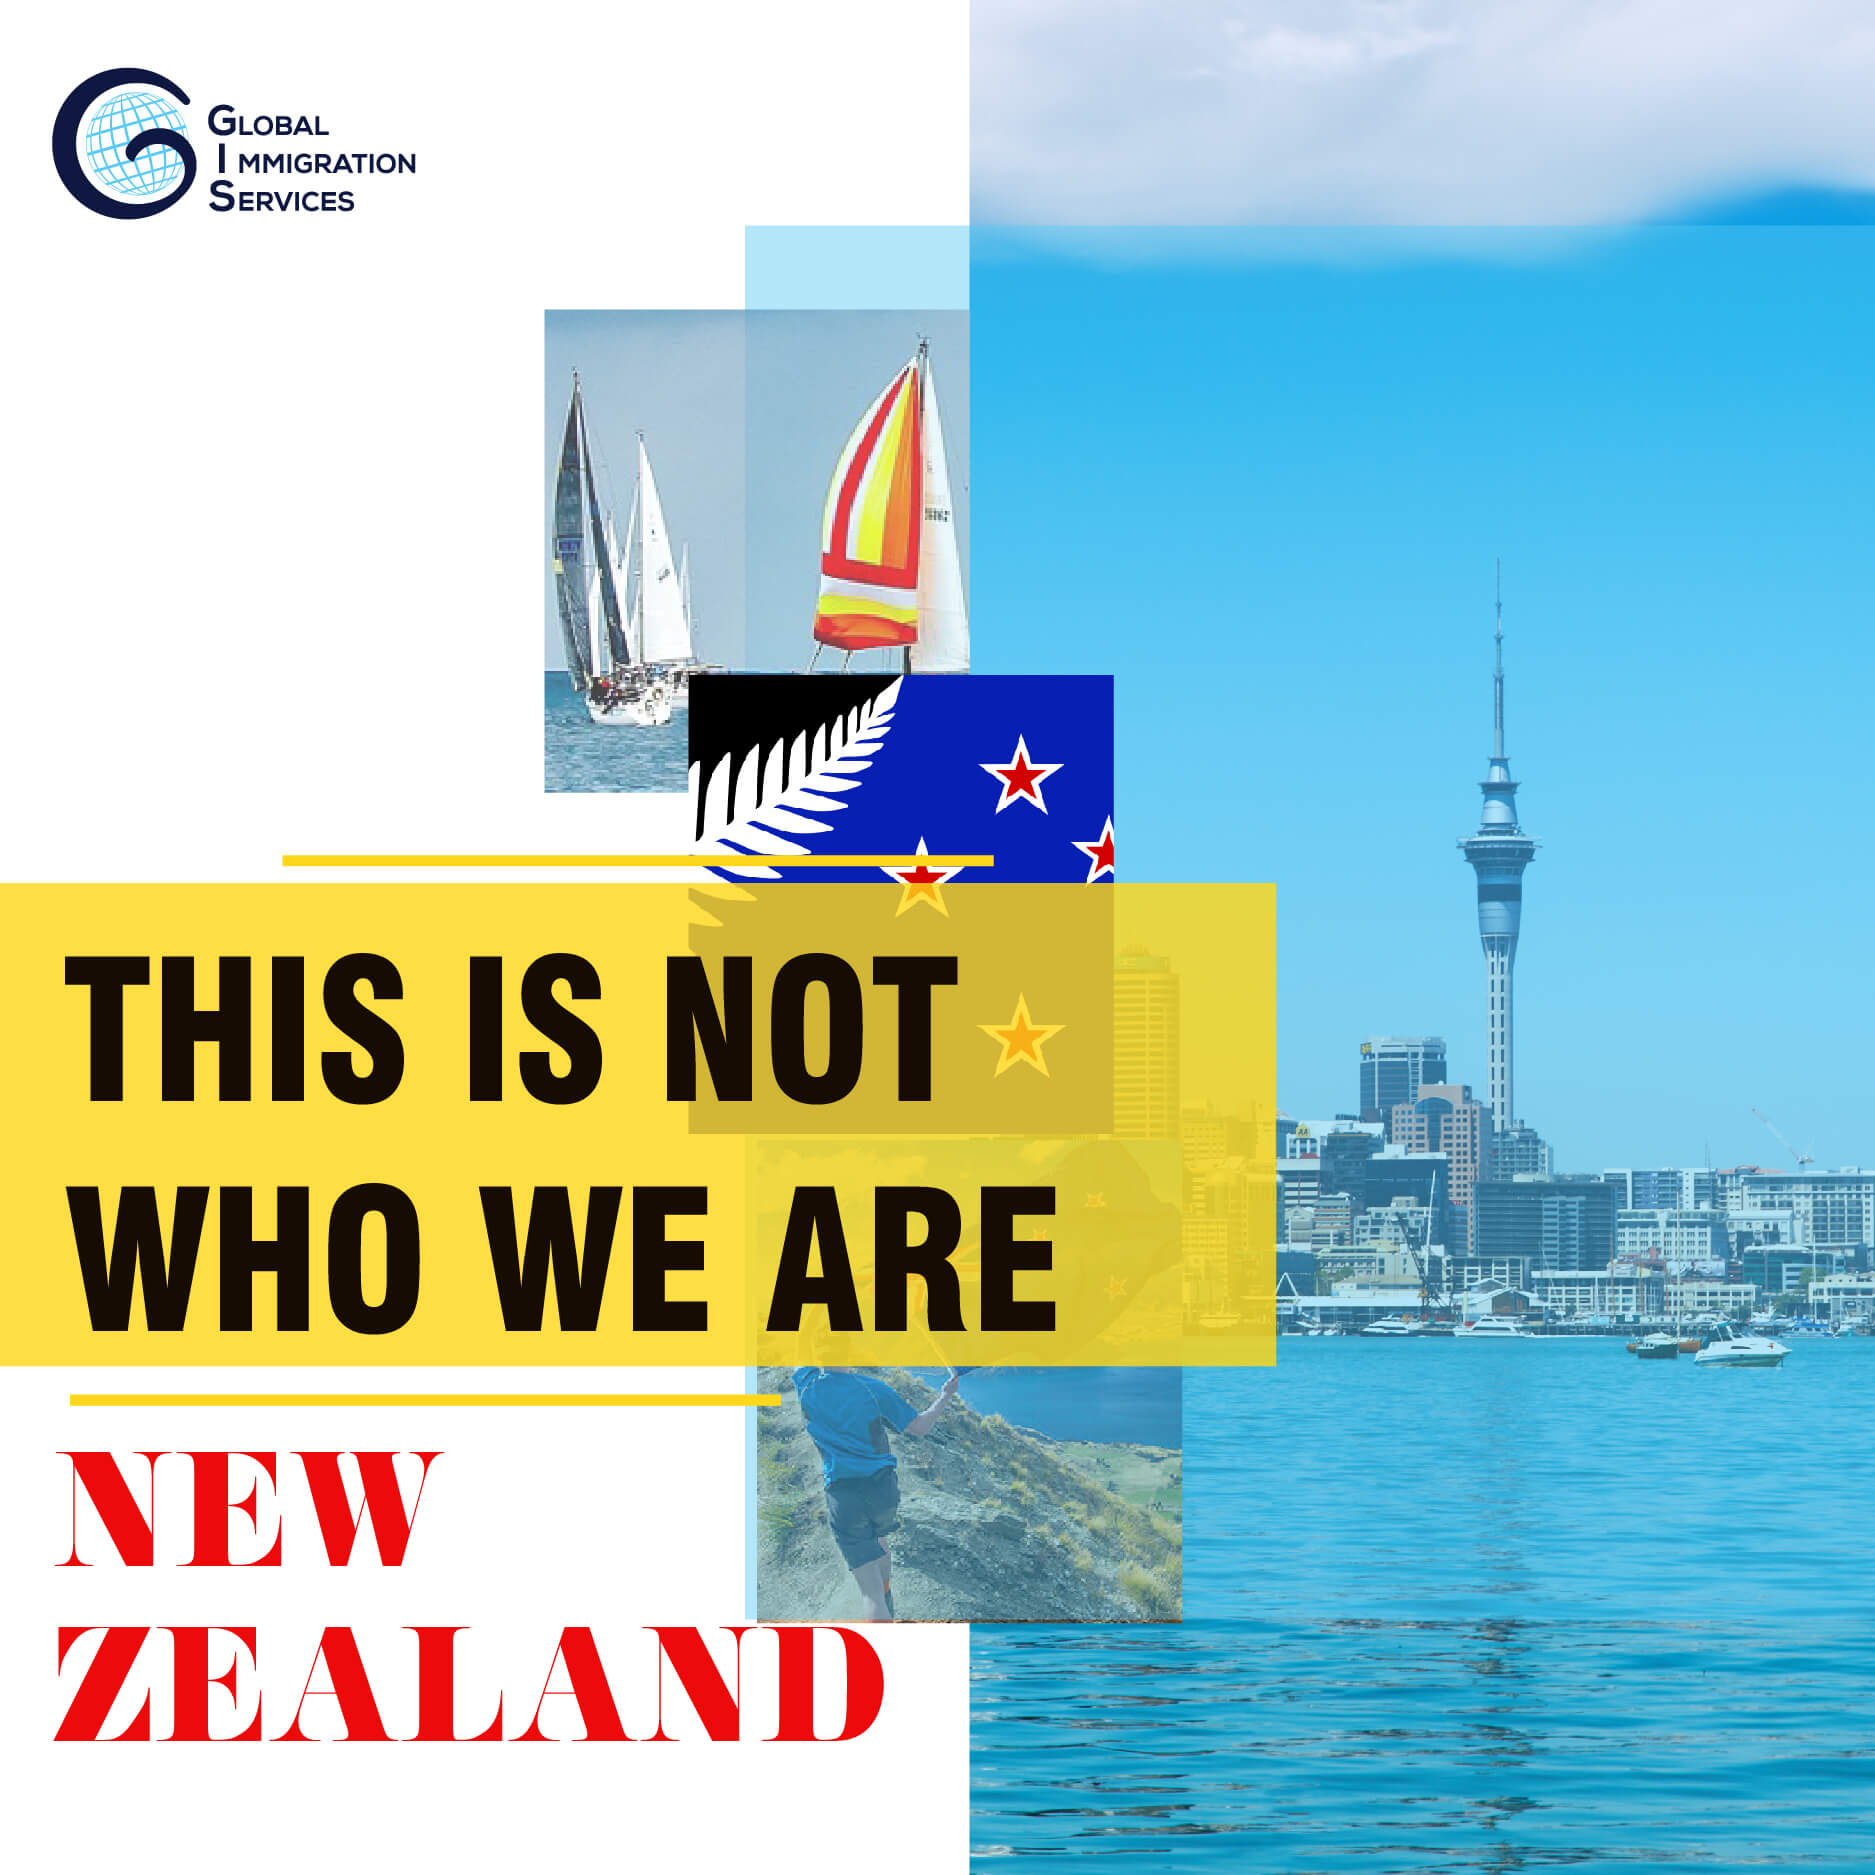 This is not who we are - Đó không phải là New Zealand của chúng tôi